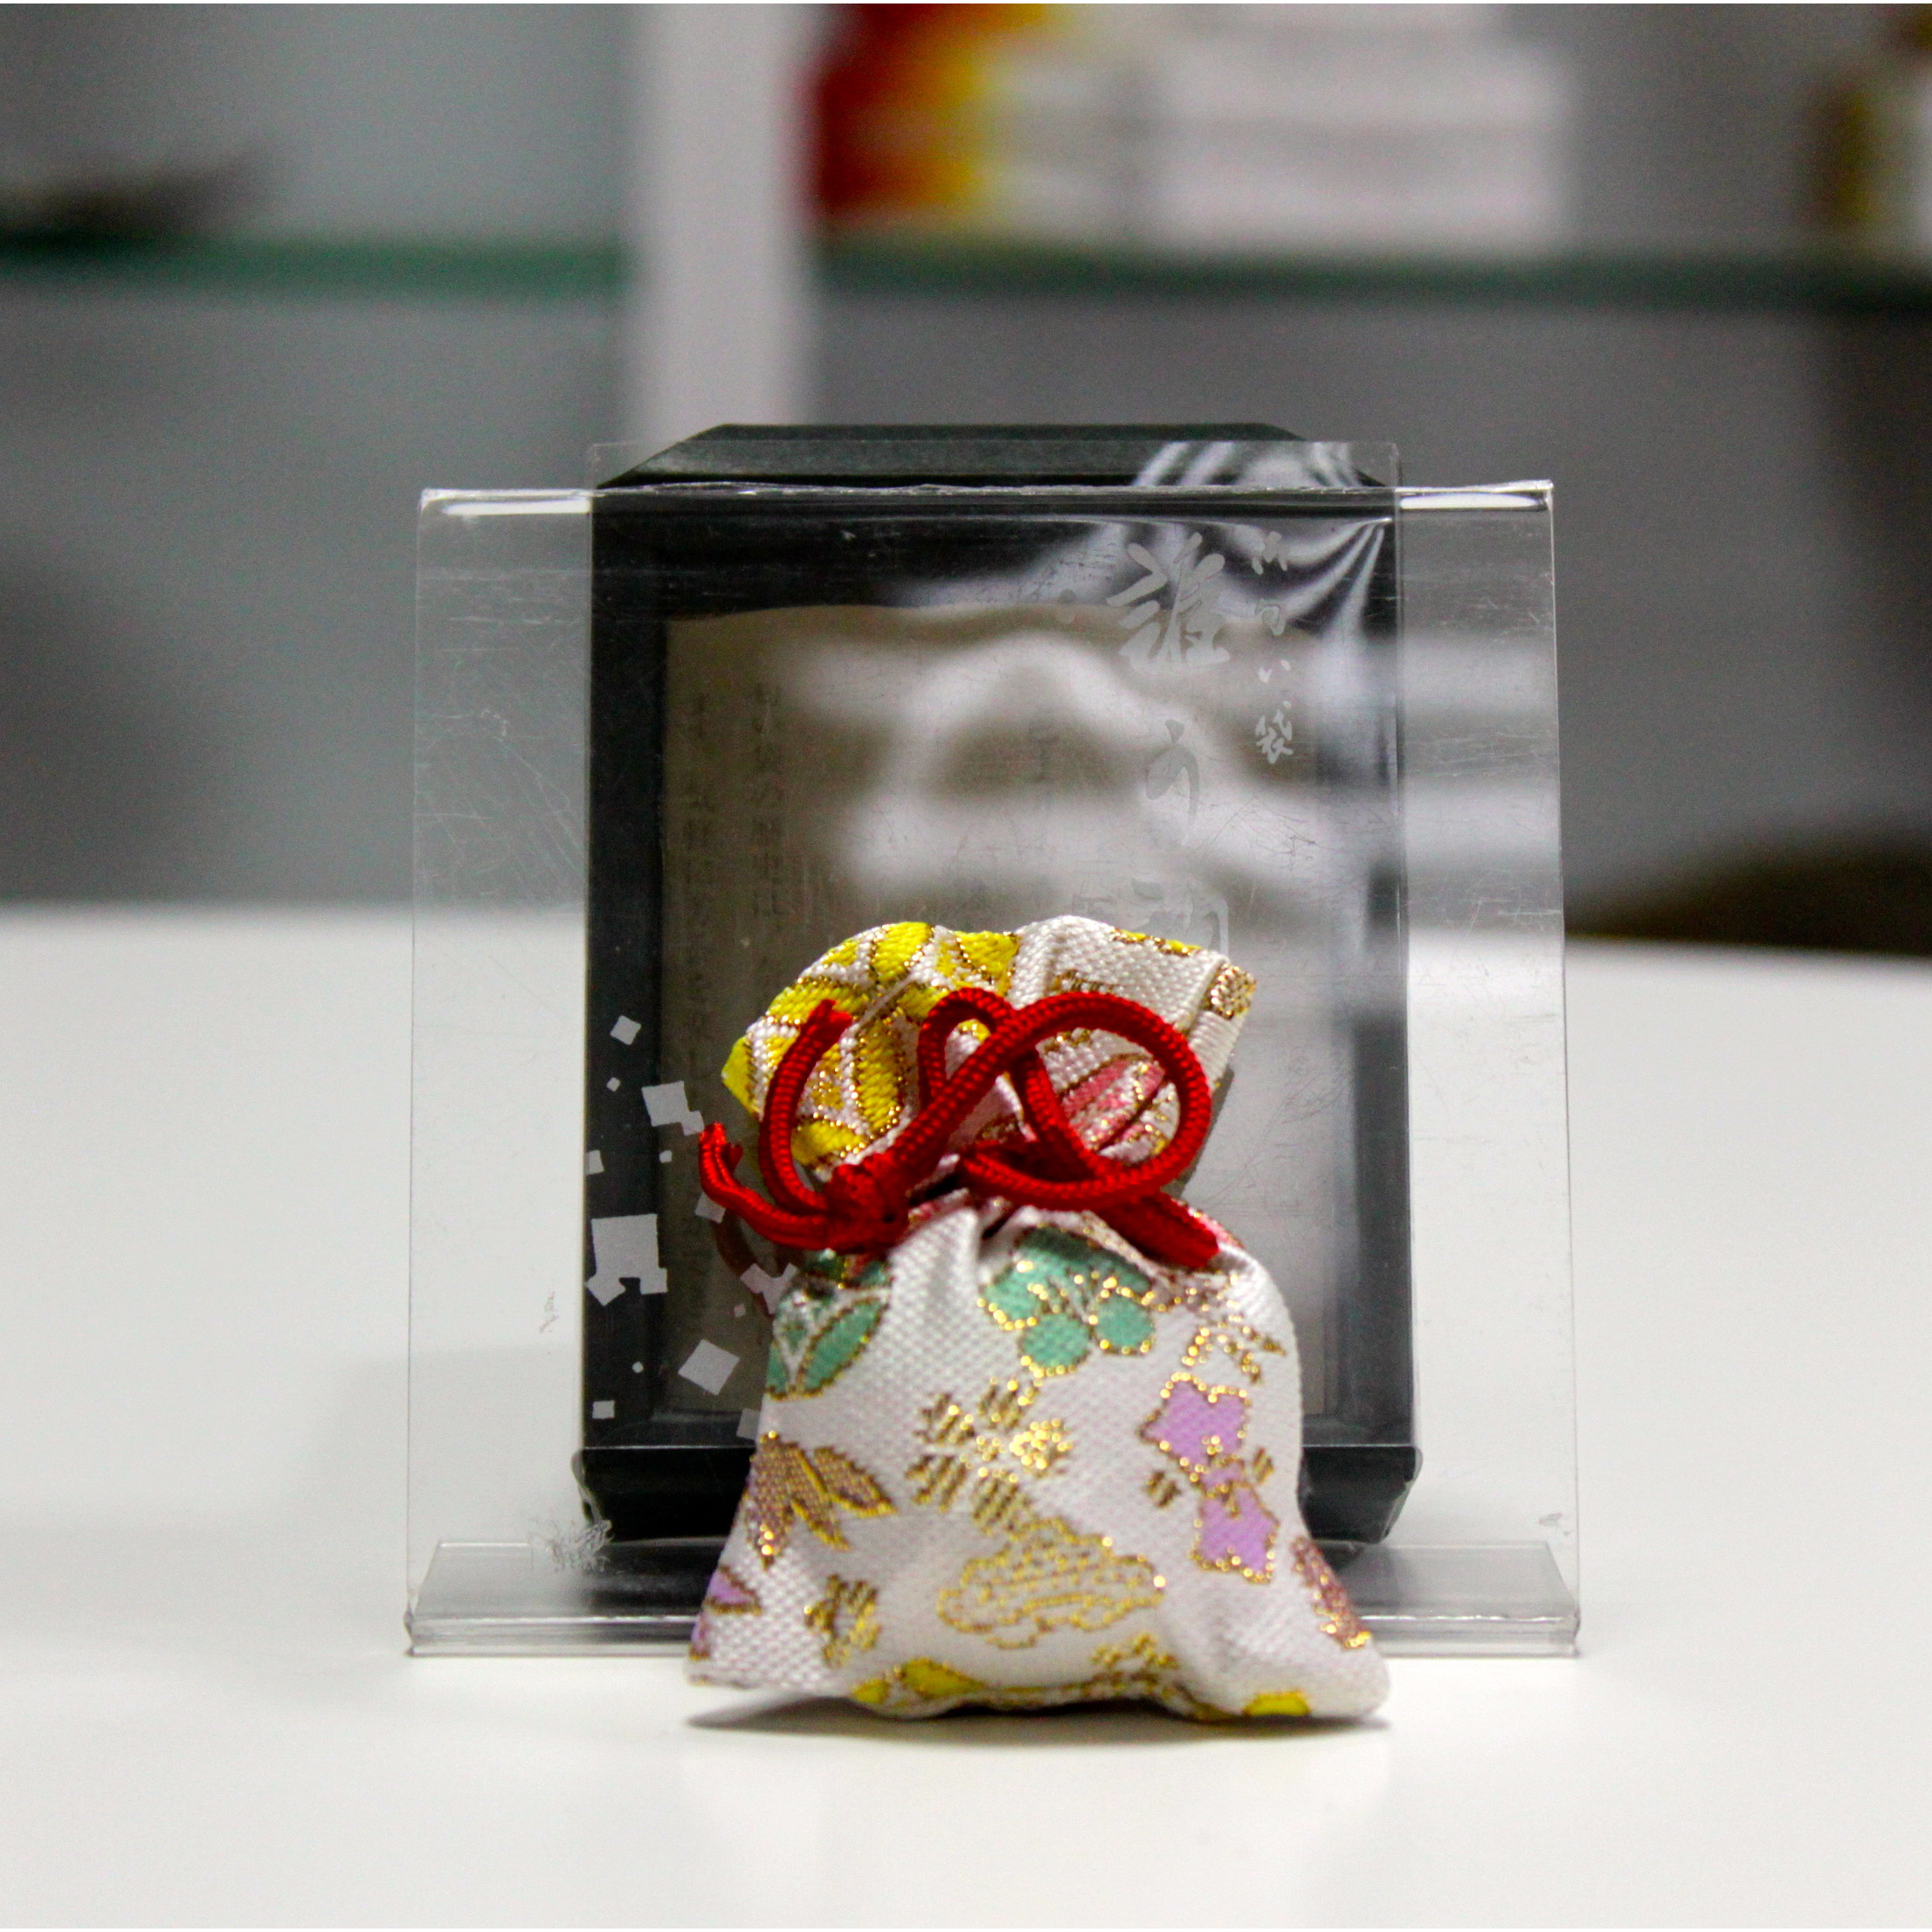 Túi thơm Gokuhin Shoyeido Nhật Bản làm từ thảo mộc dùng để treo xe ô tô, treo tủ quần áo, treo túi xách, để trong phòng giúp tạo hương thơm